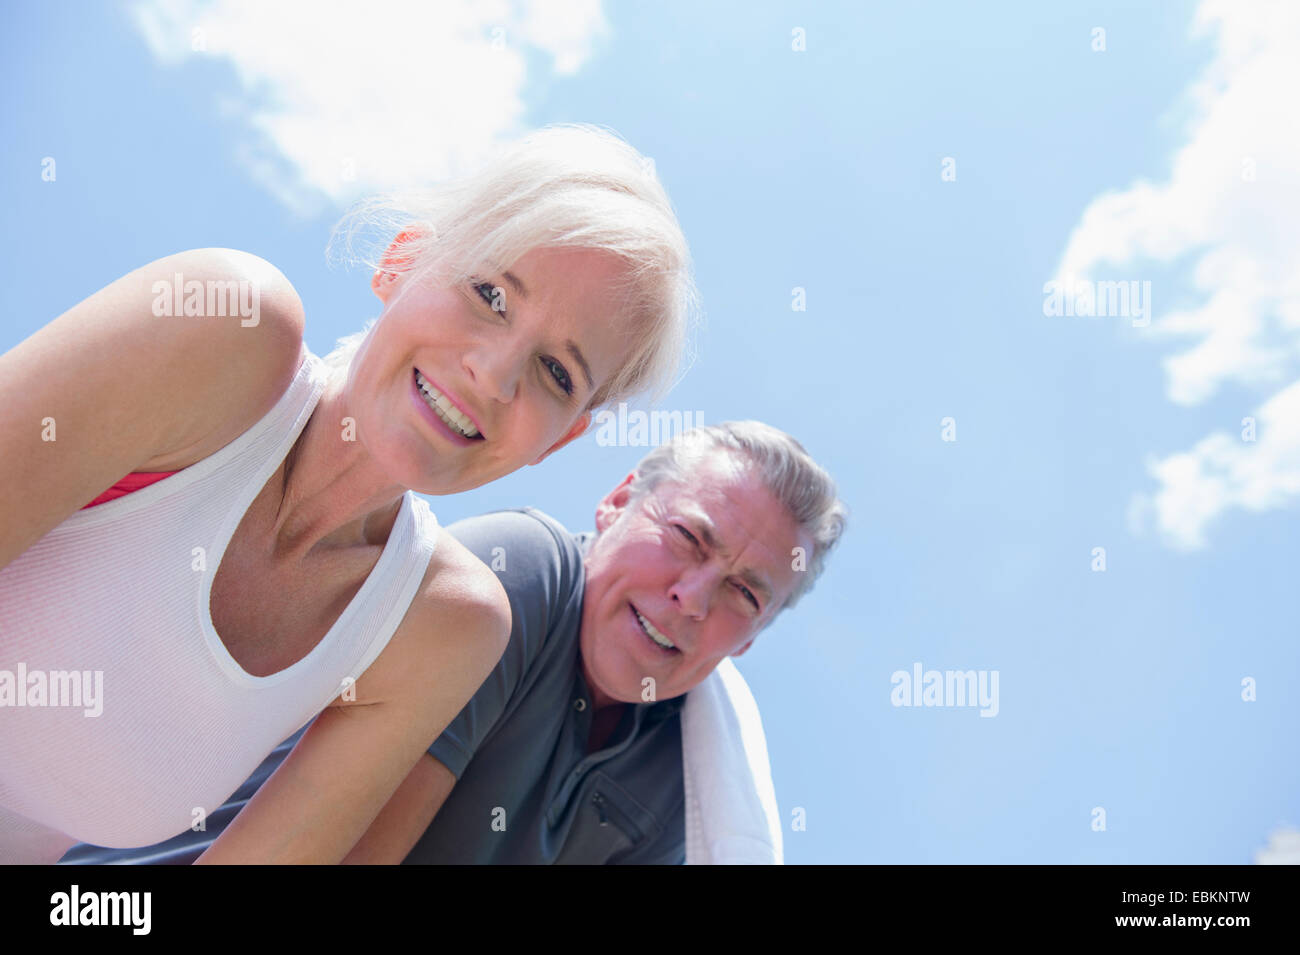 Portrait of smiling couple against sky Banque D'Images